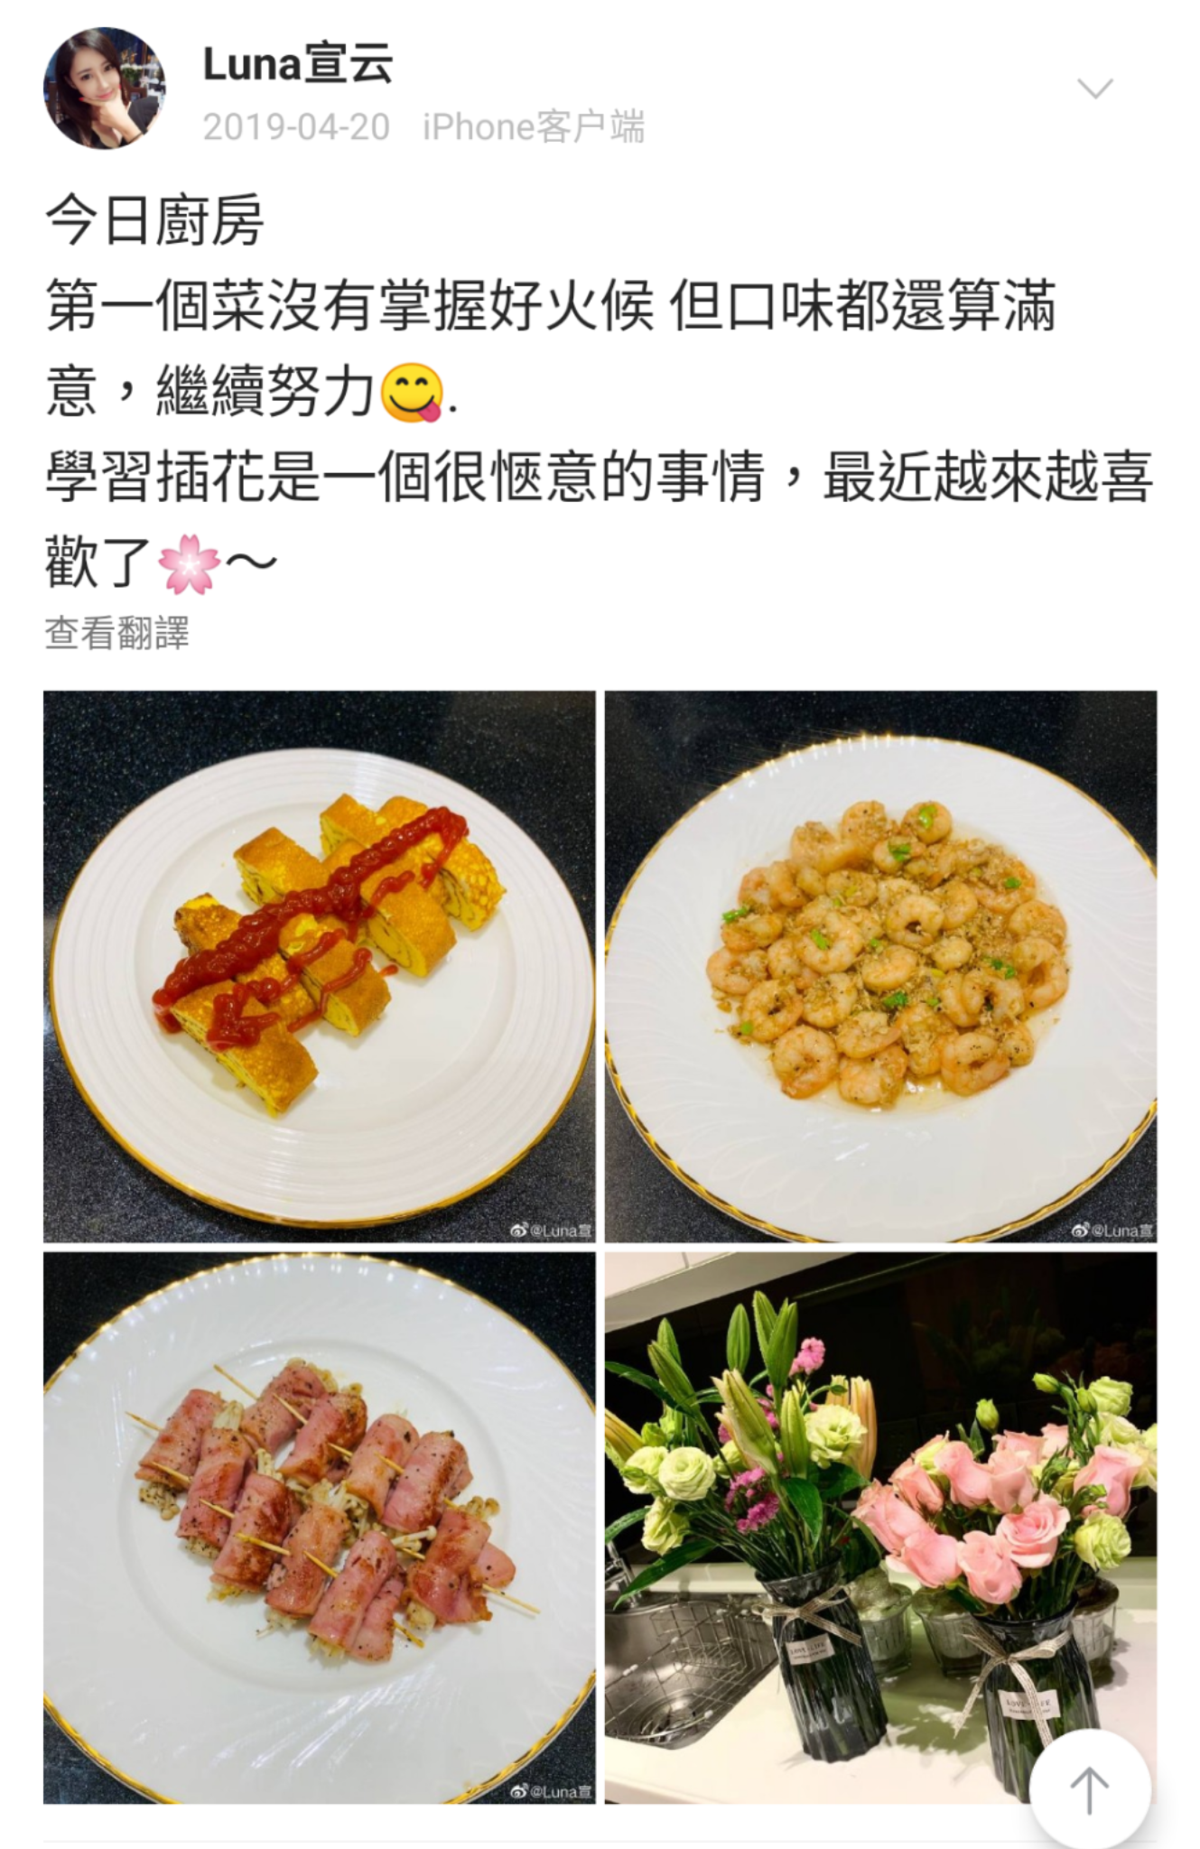 去年Luna貼出的美食照，被網友發現與別人的照片相同，指控她盜圖。（翻攝Luna宣云微博）